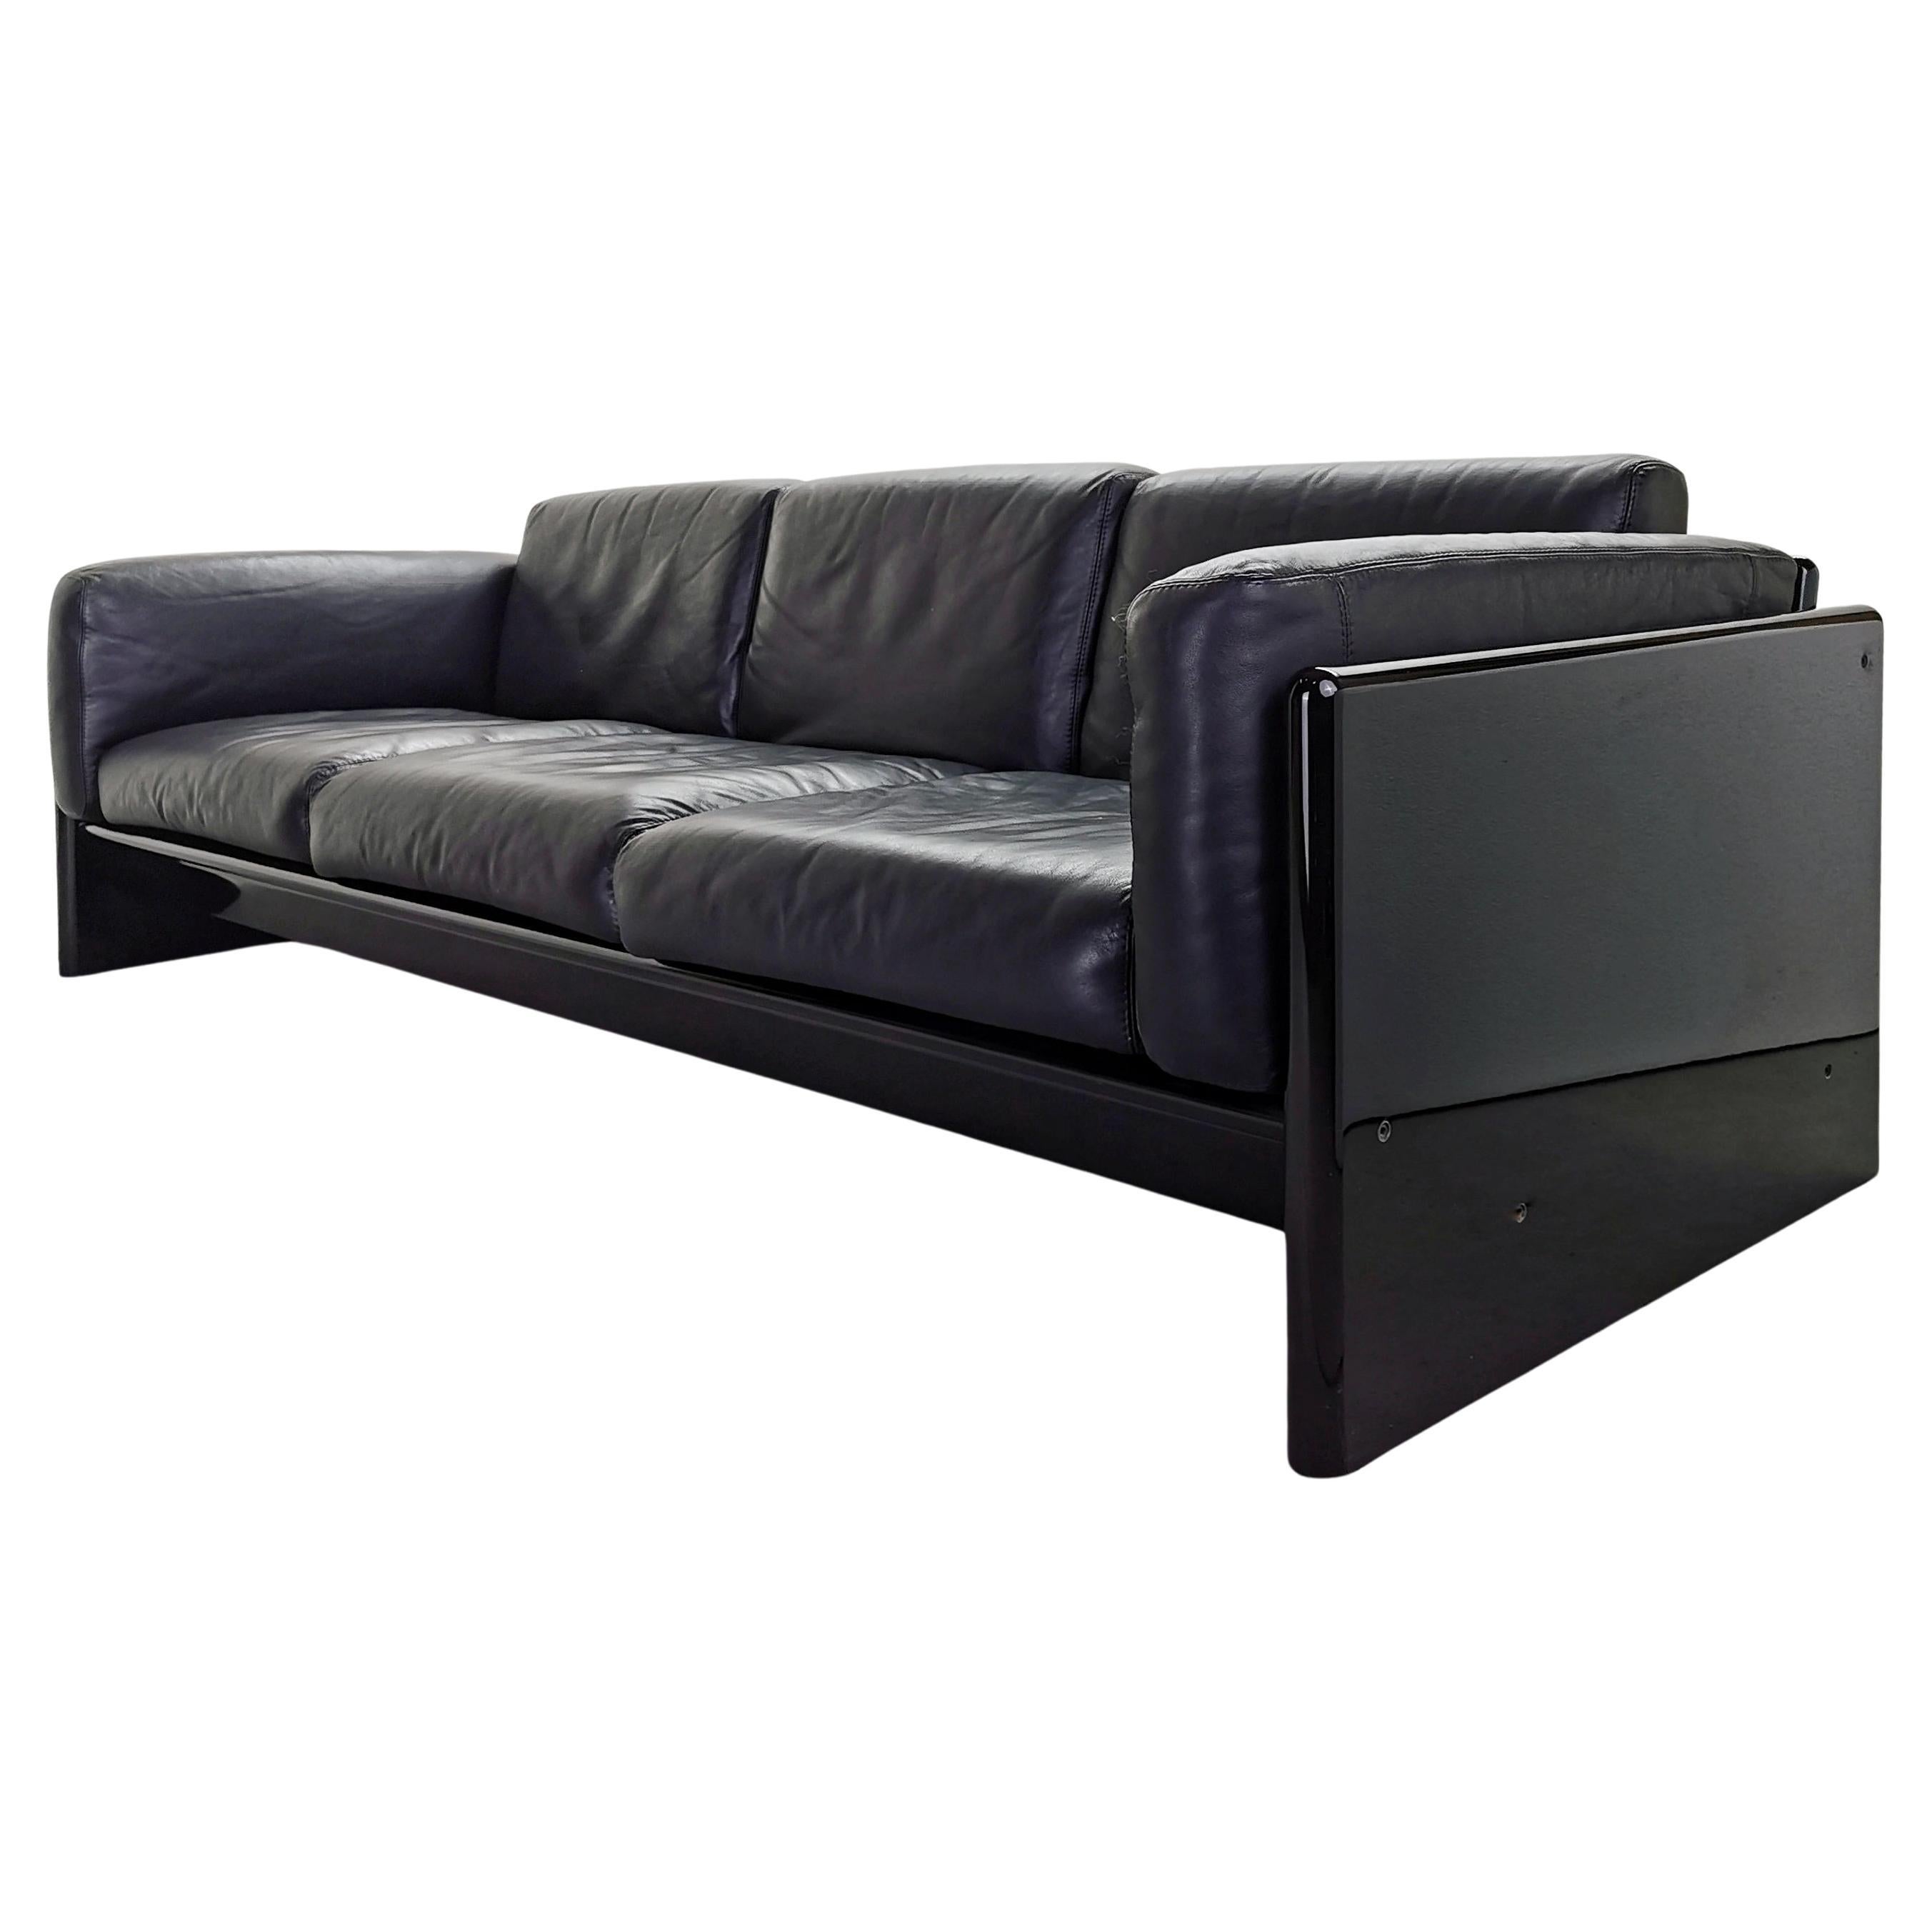 Elegantes Sofa 'Simone', entworfen von Dino Gavina für Studio Simon in den 1970er Jahren.
Kissen mit schwarzem Leder bezogen und Polyester lackiertem Holzrahmen, glänzend schwarz. 
Solides, intaktes Sofagestell mit schwachen Spuren
Polsterung und